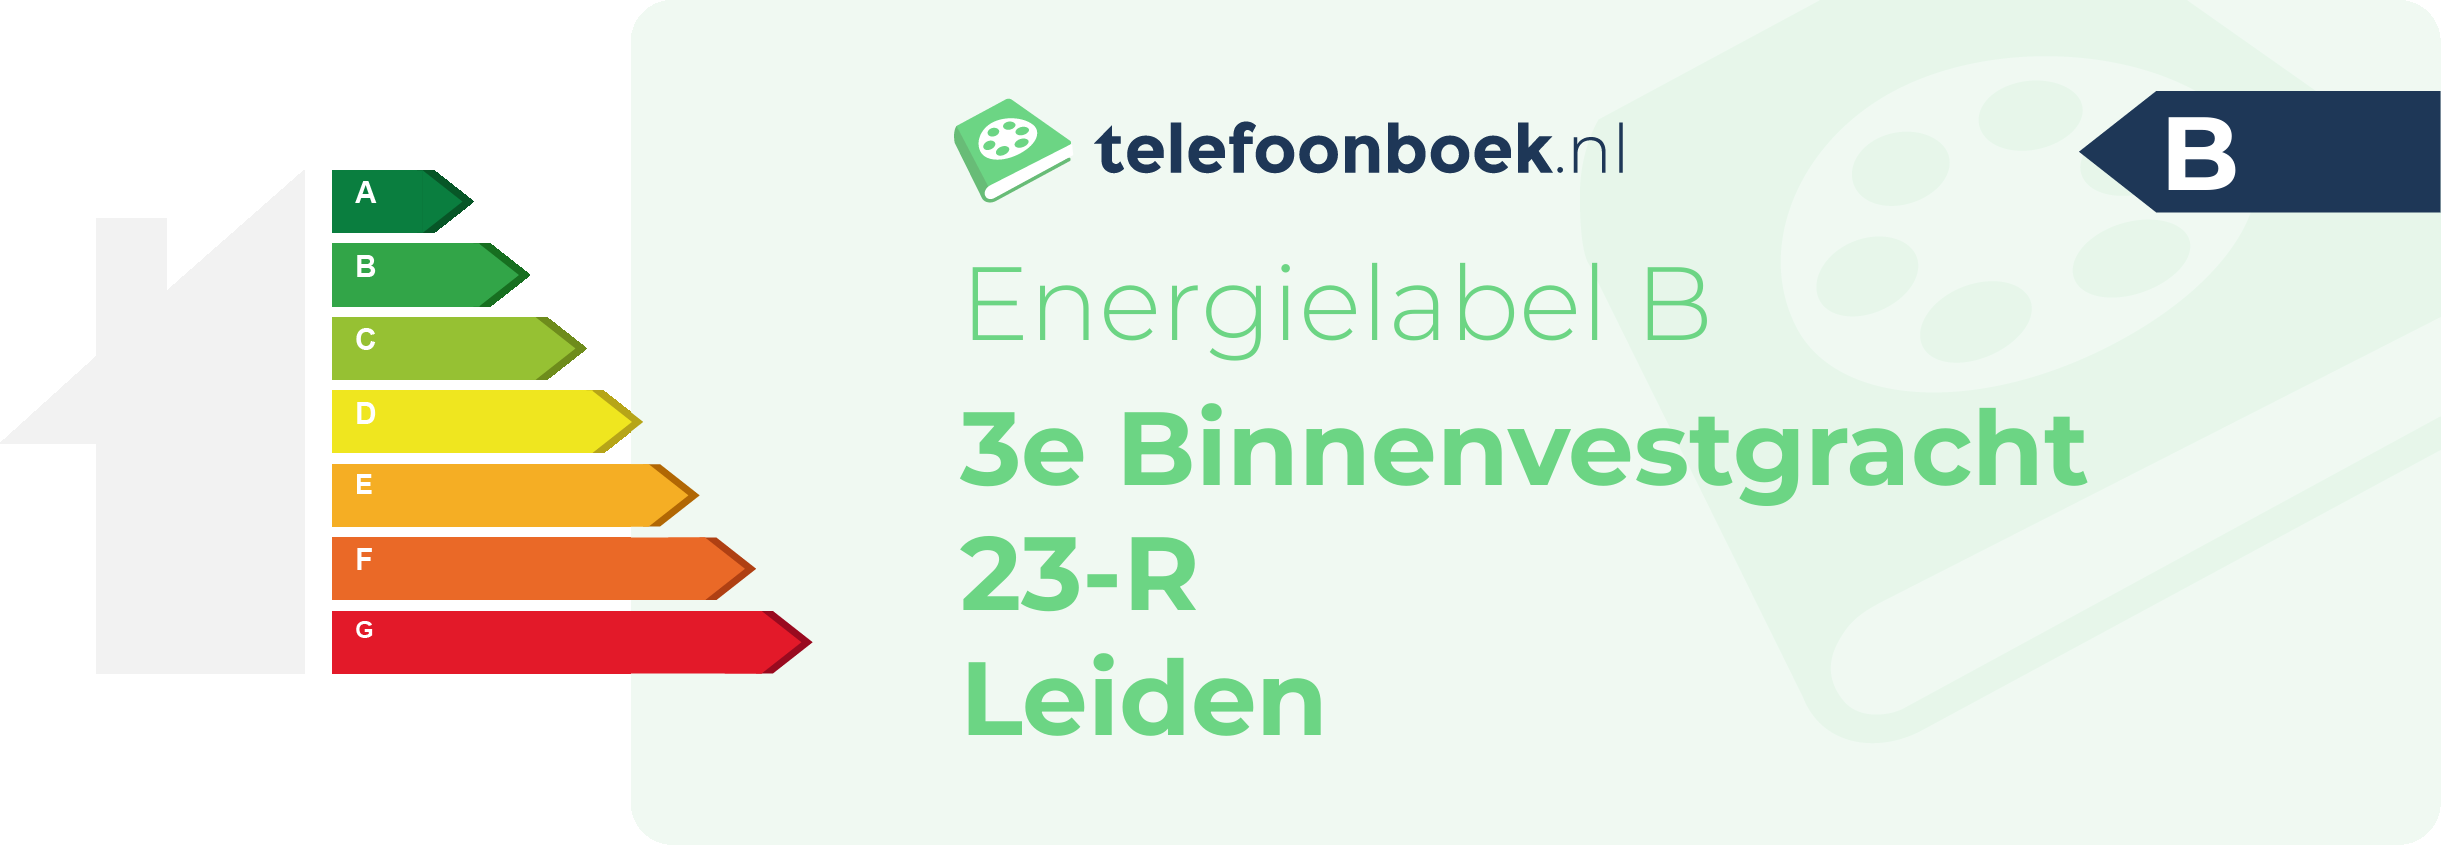 Energielabel 3e Binnenvestgracht 23-R Leiden